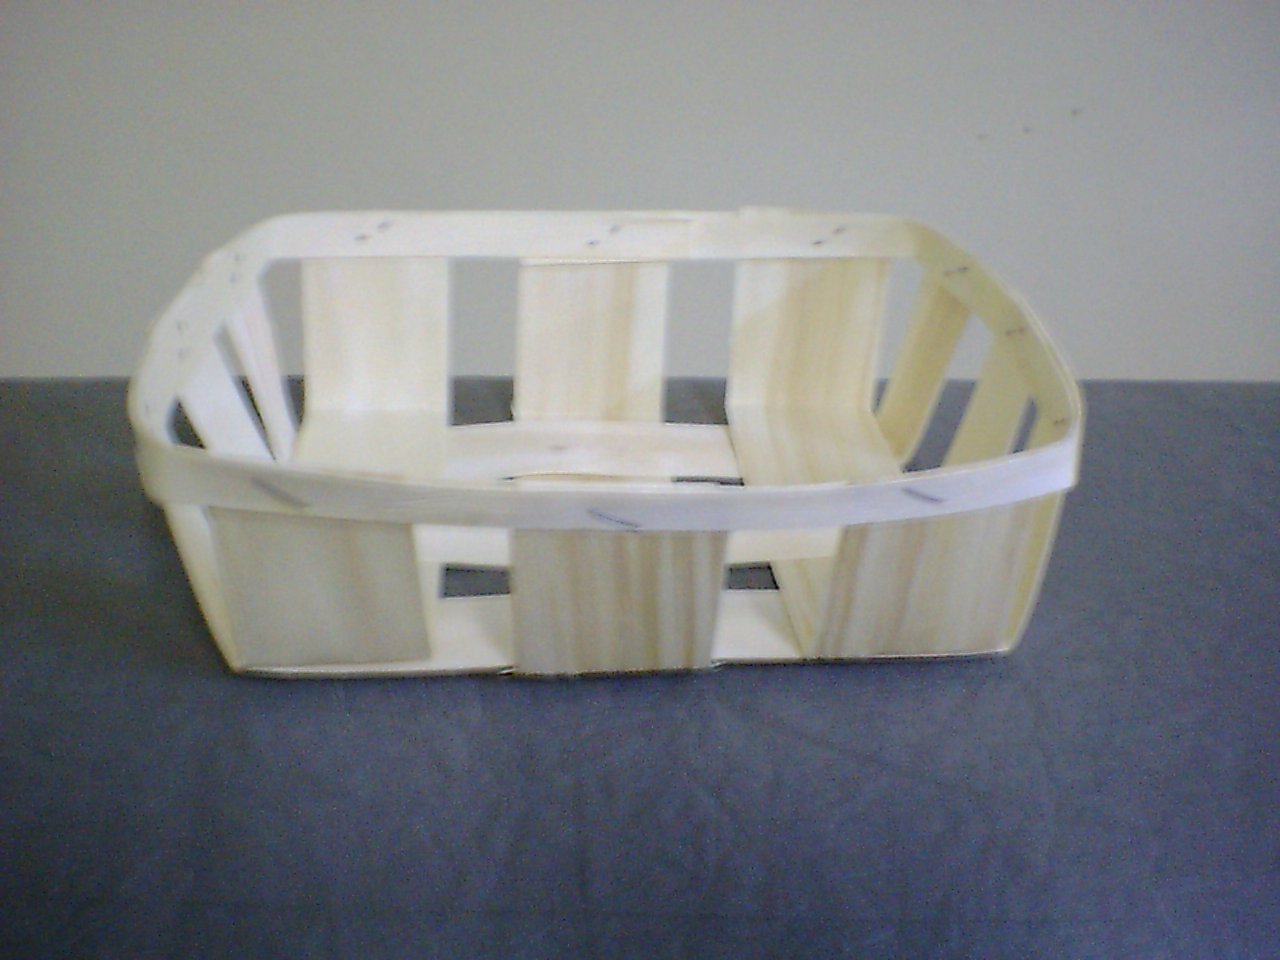 asp wooden boxes